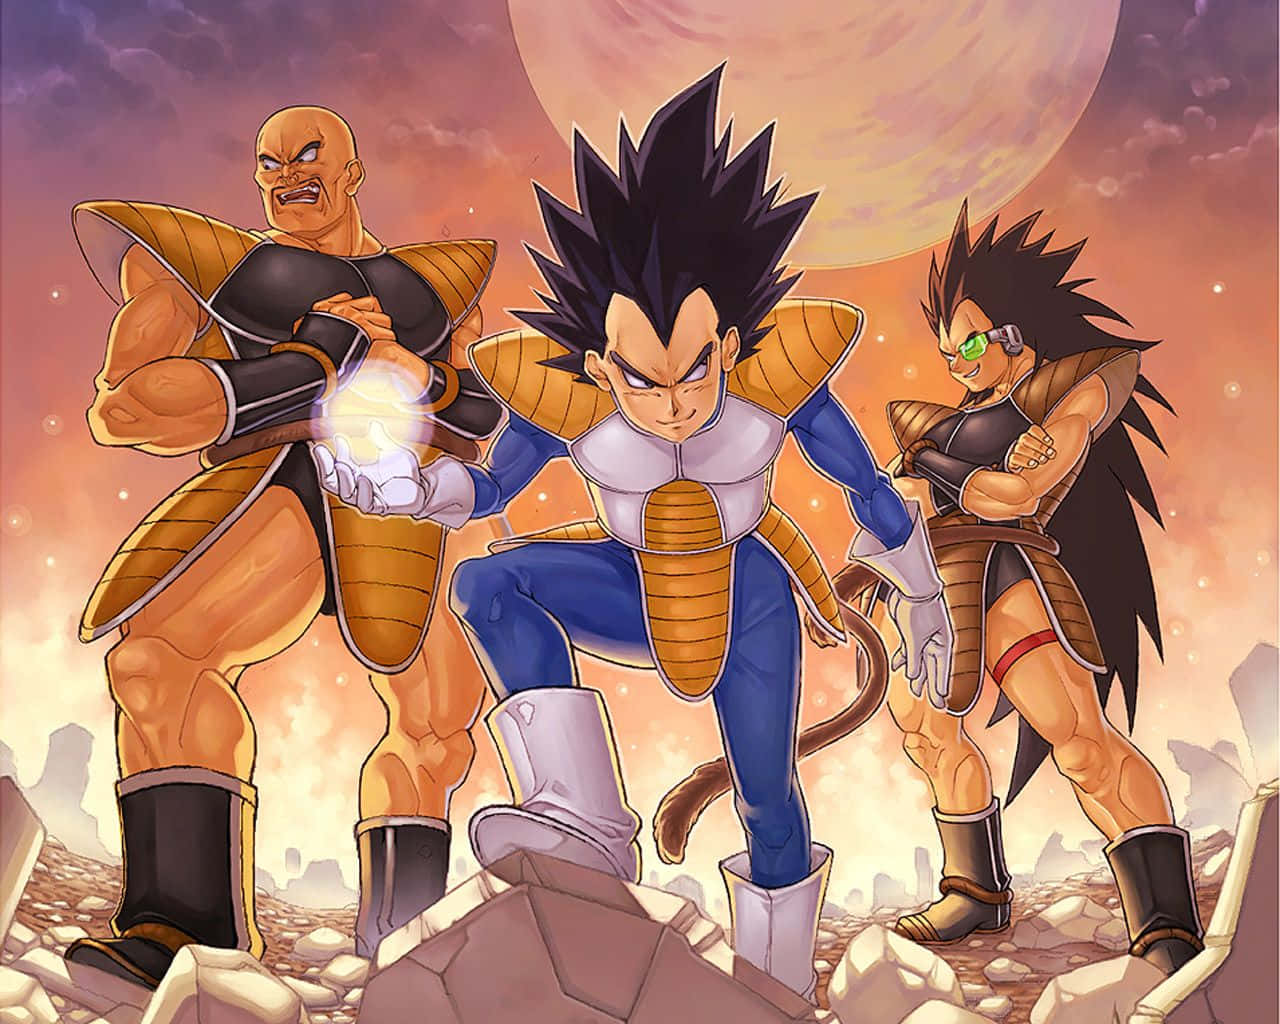 in HD - Tag på en magisk rejse sammen med Majin Vegeta og andre Dragon Ball-karakterer i høj opløsning. Wallpaper